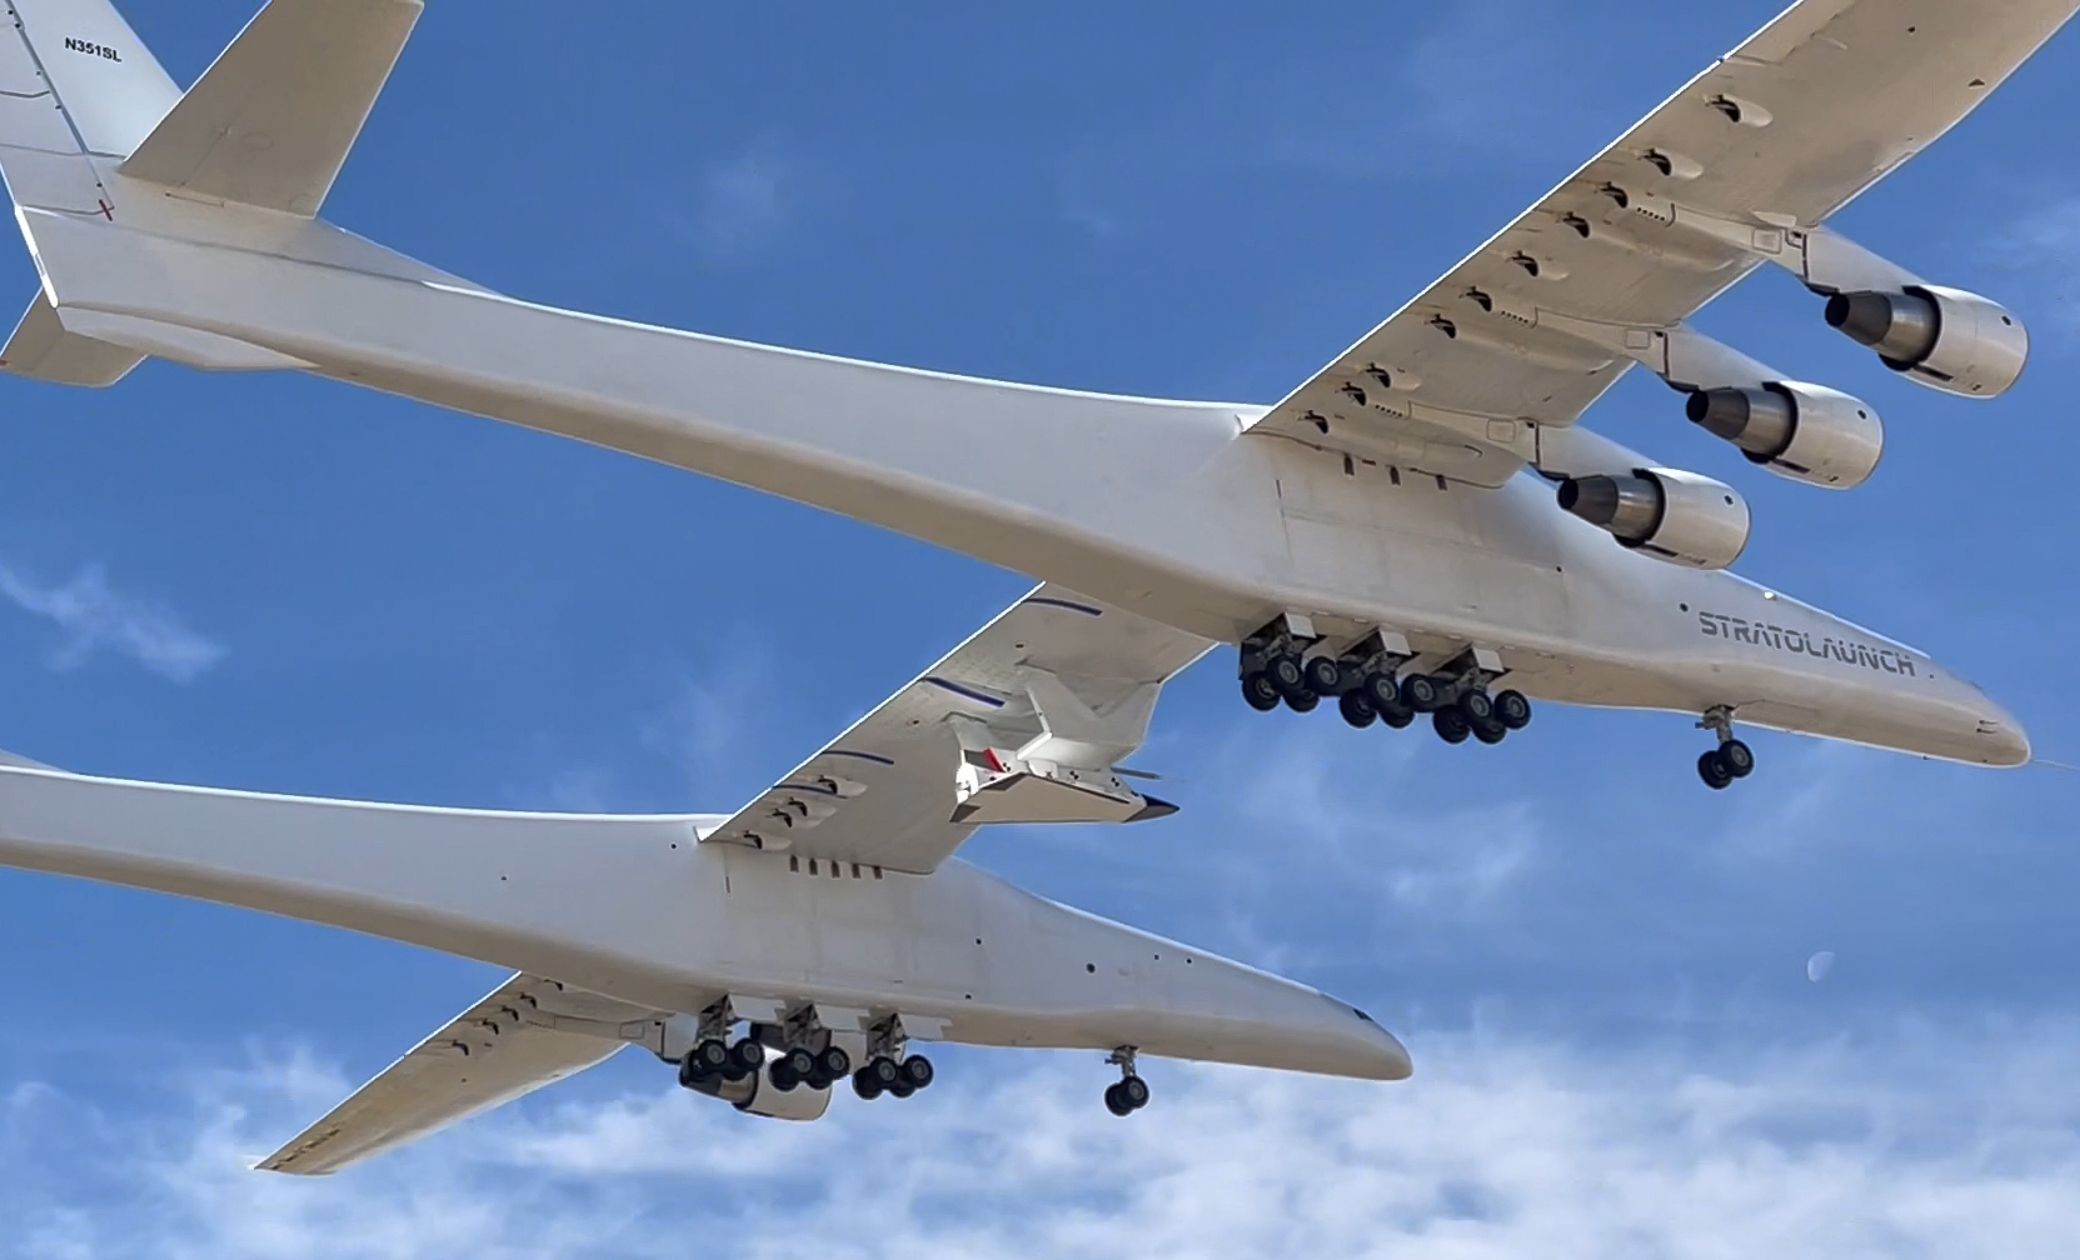 Verdens største Stratolaunch Roc-fly har gjort sin jomfrutur med et Talon-A hypersonisk glidefly med drivstoff.